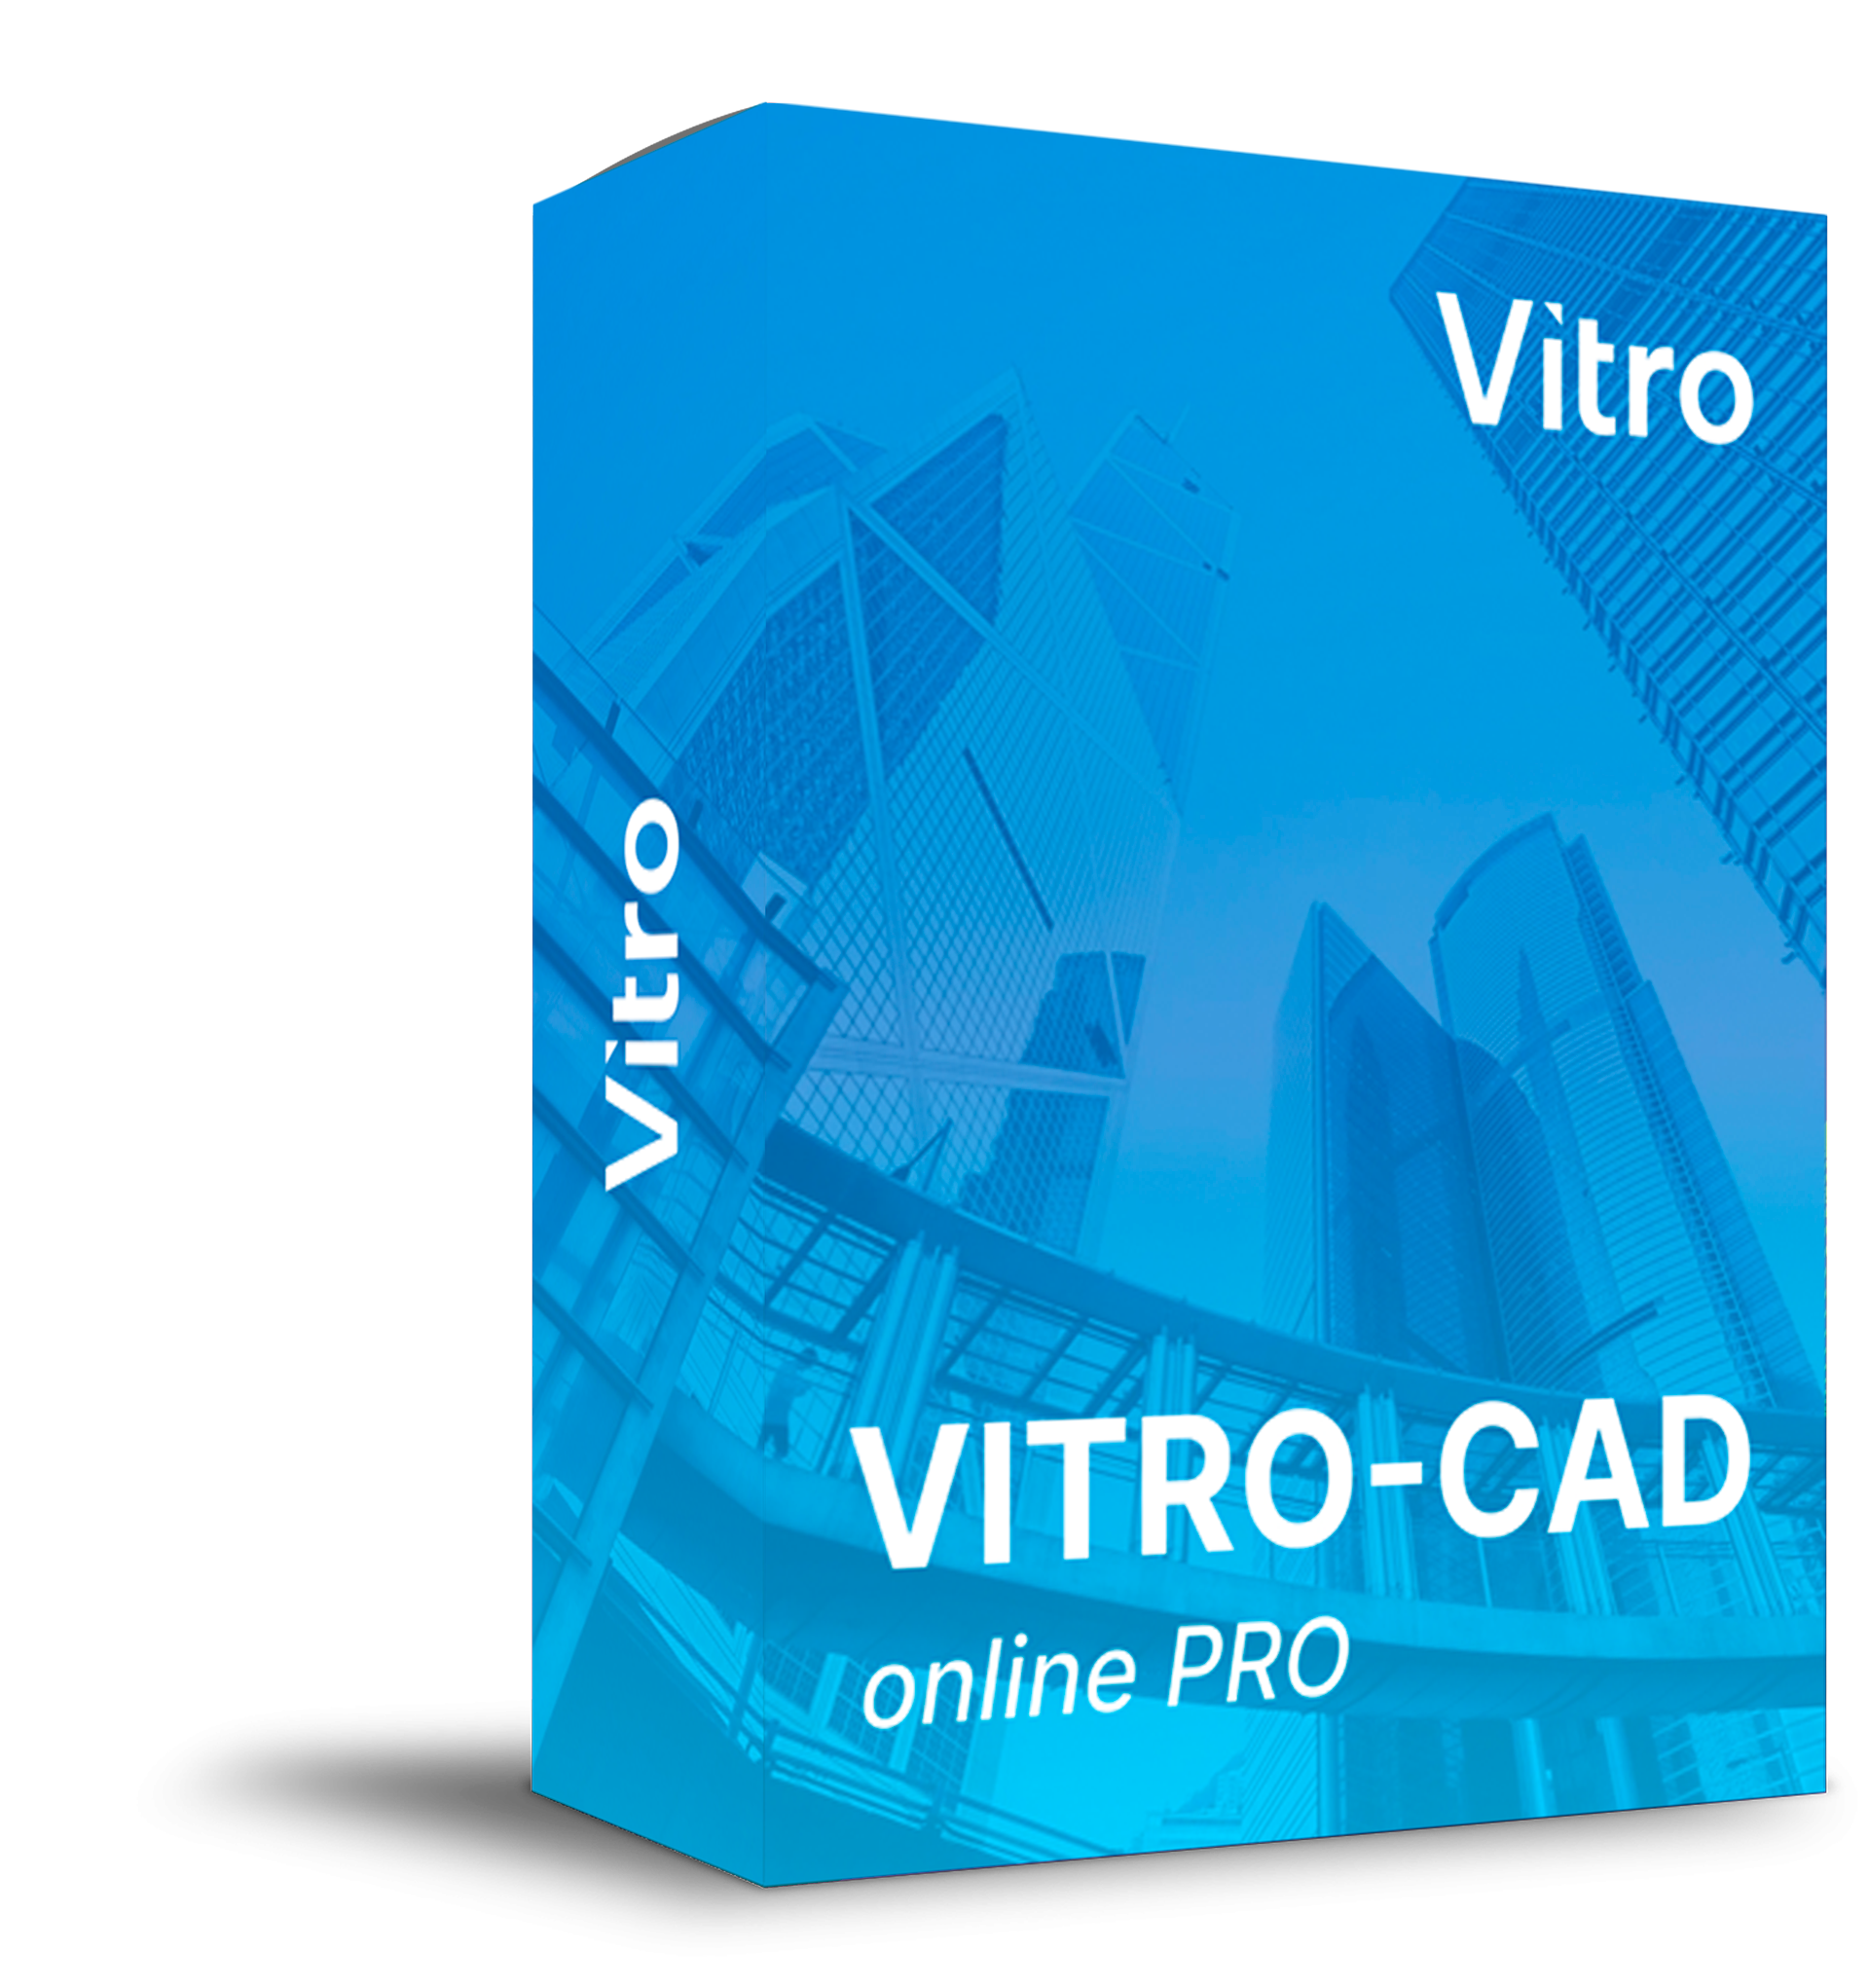 Vitro-CAD online PRO